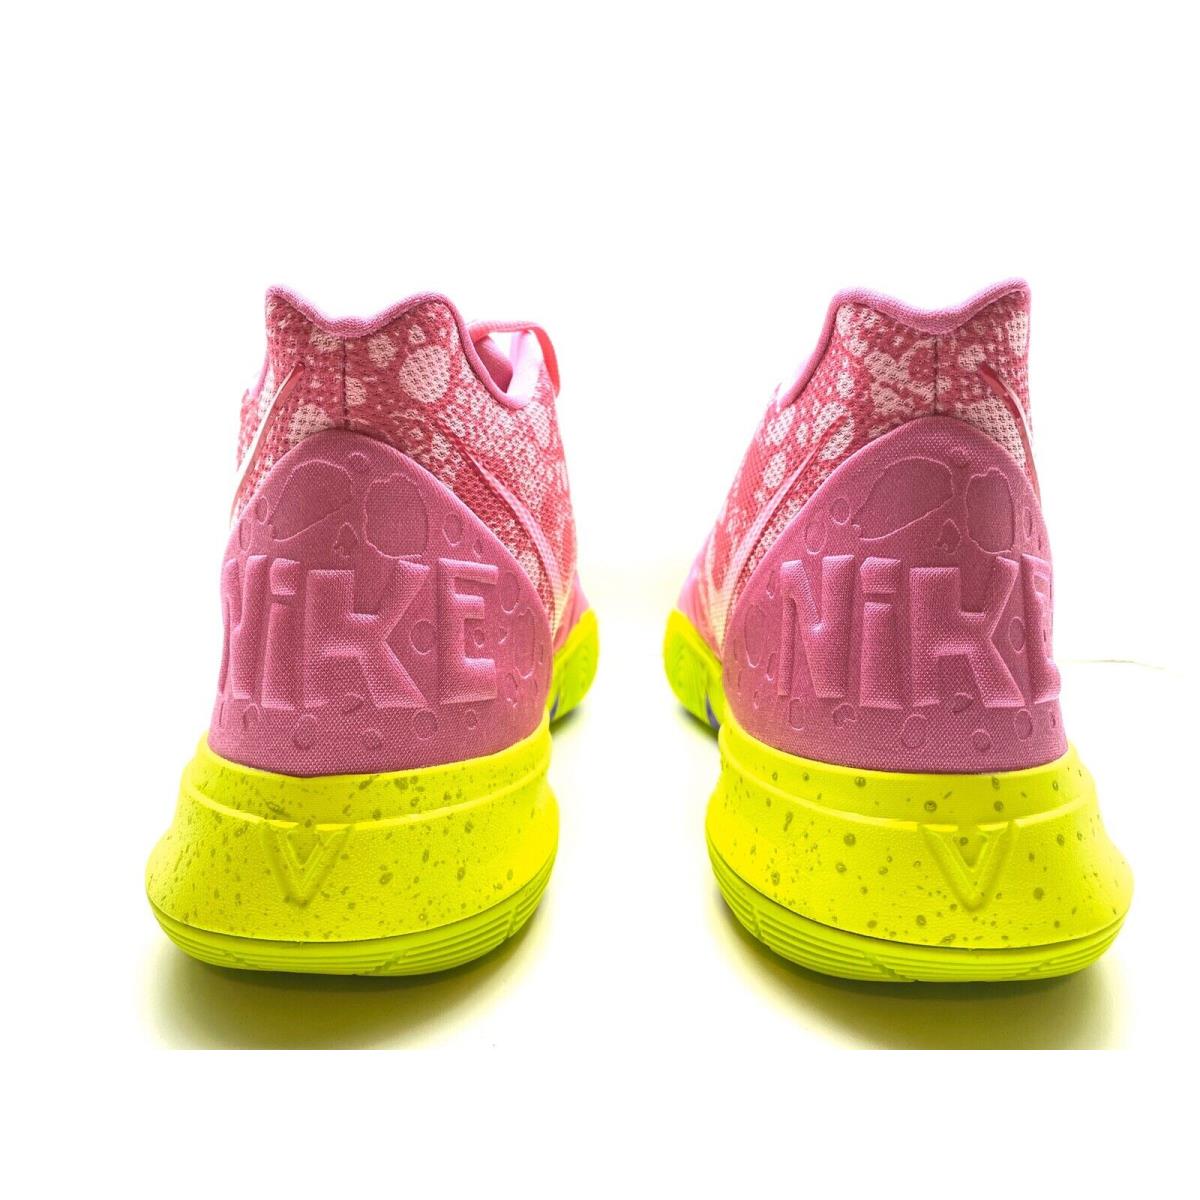 Nike Kyrie 5 Sbsp Spongebob Squarepants Patrick Star Lotus Pink CJ6951 600  sz 17 | 883212045218 - Nike shoes Kyrie - Pink | SporTipTop